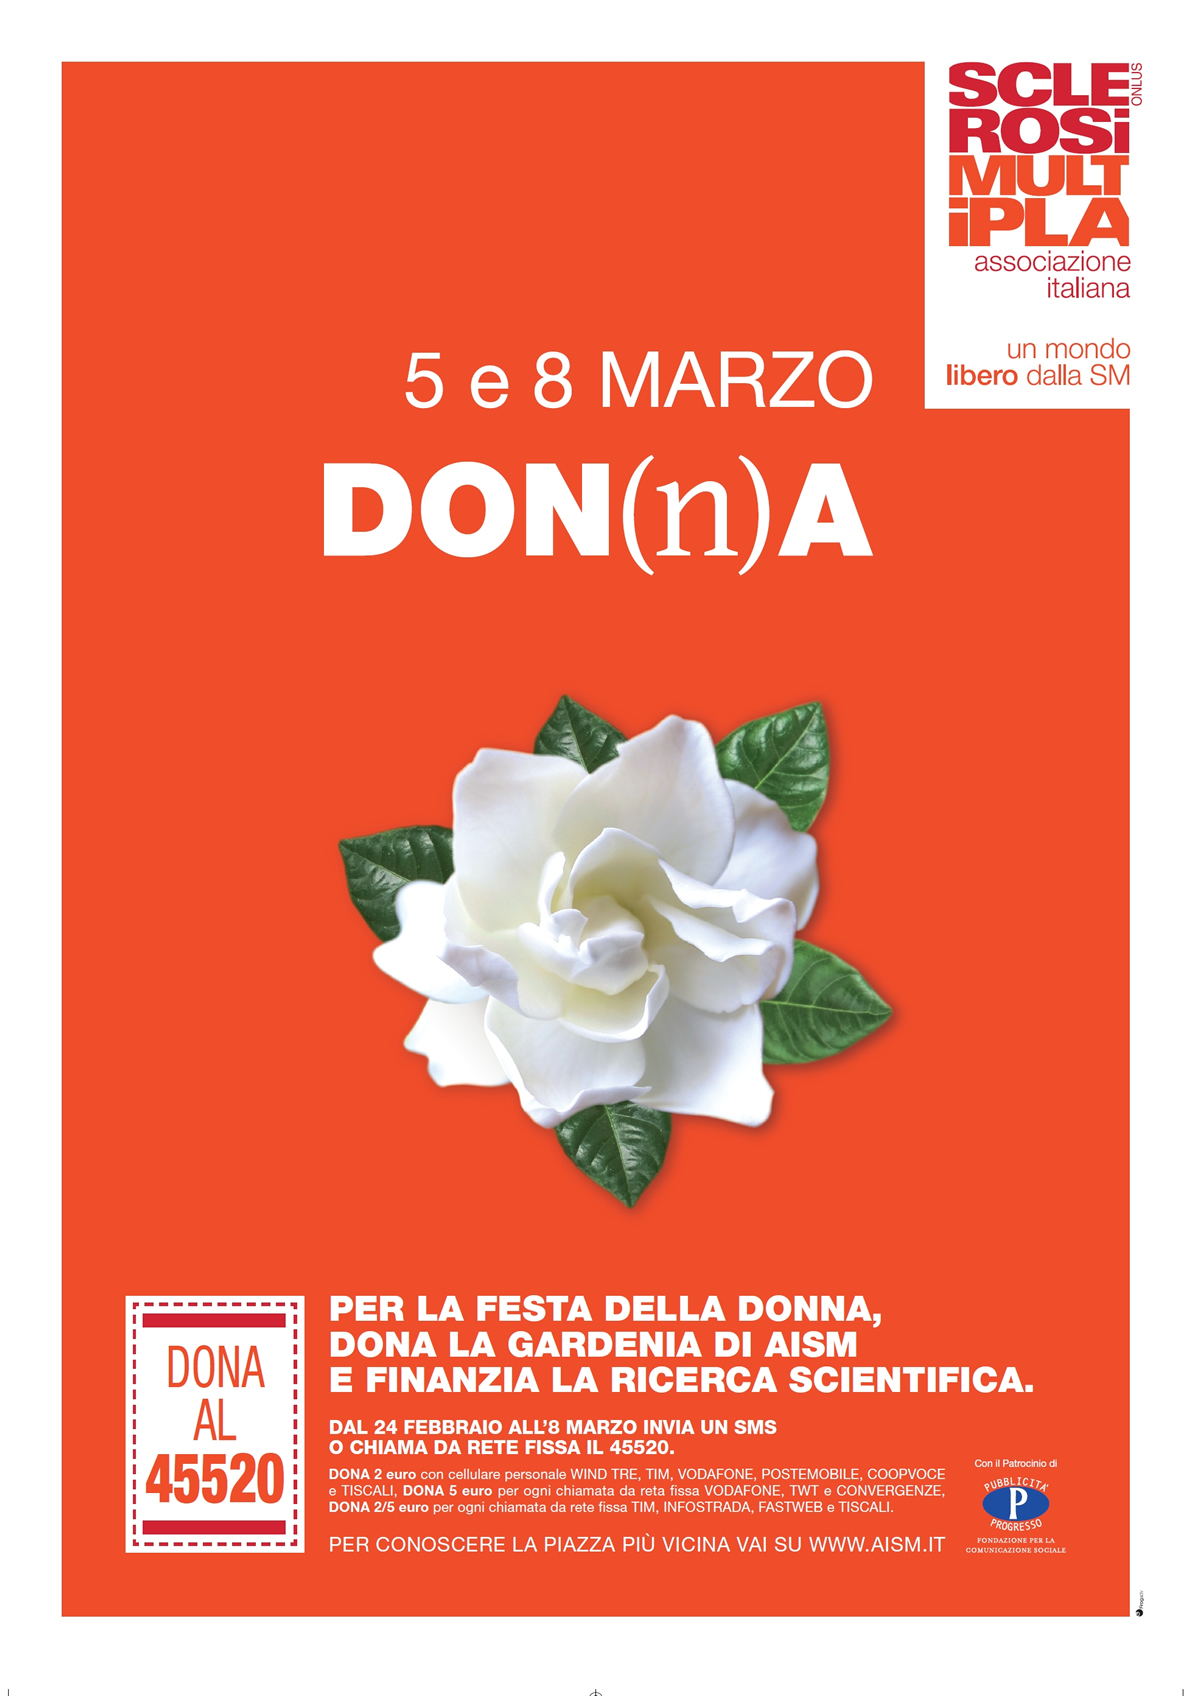 Domenica 5 e mercoledì 8 marzo torna La Gardenia di AISM